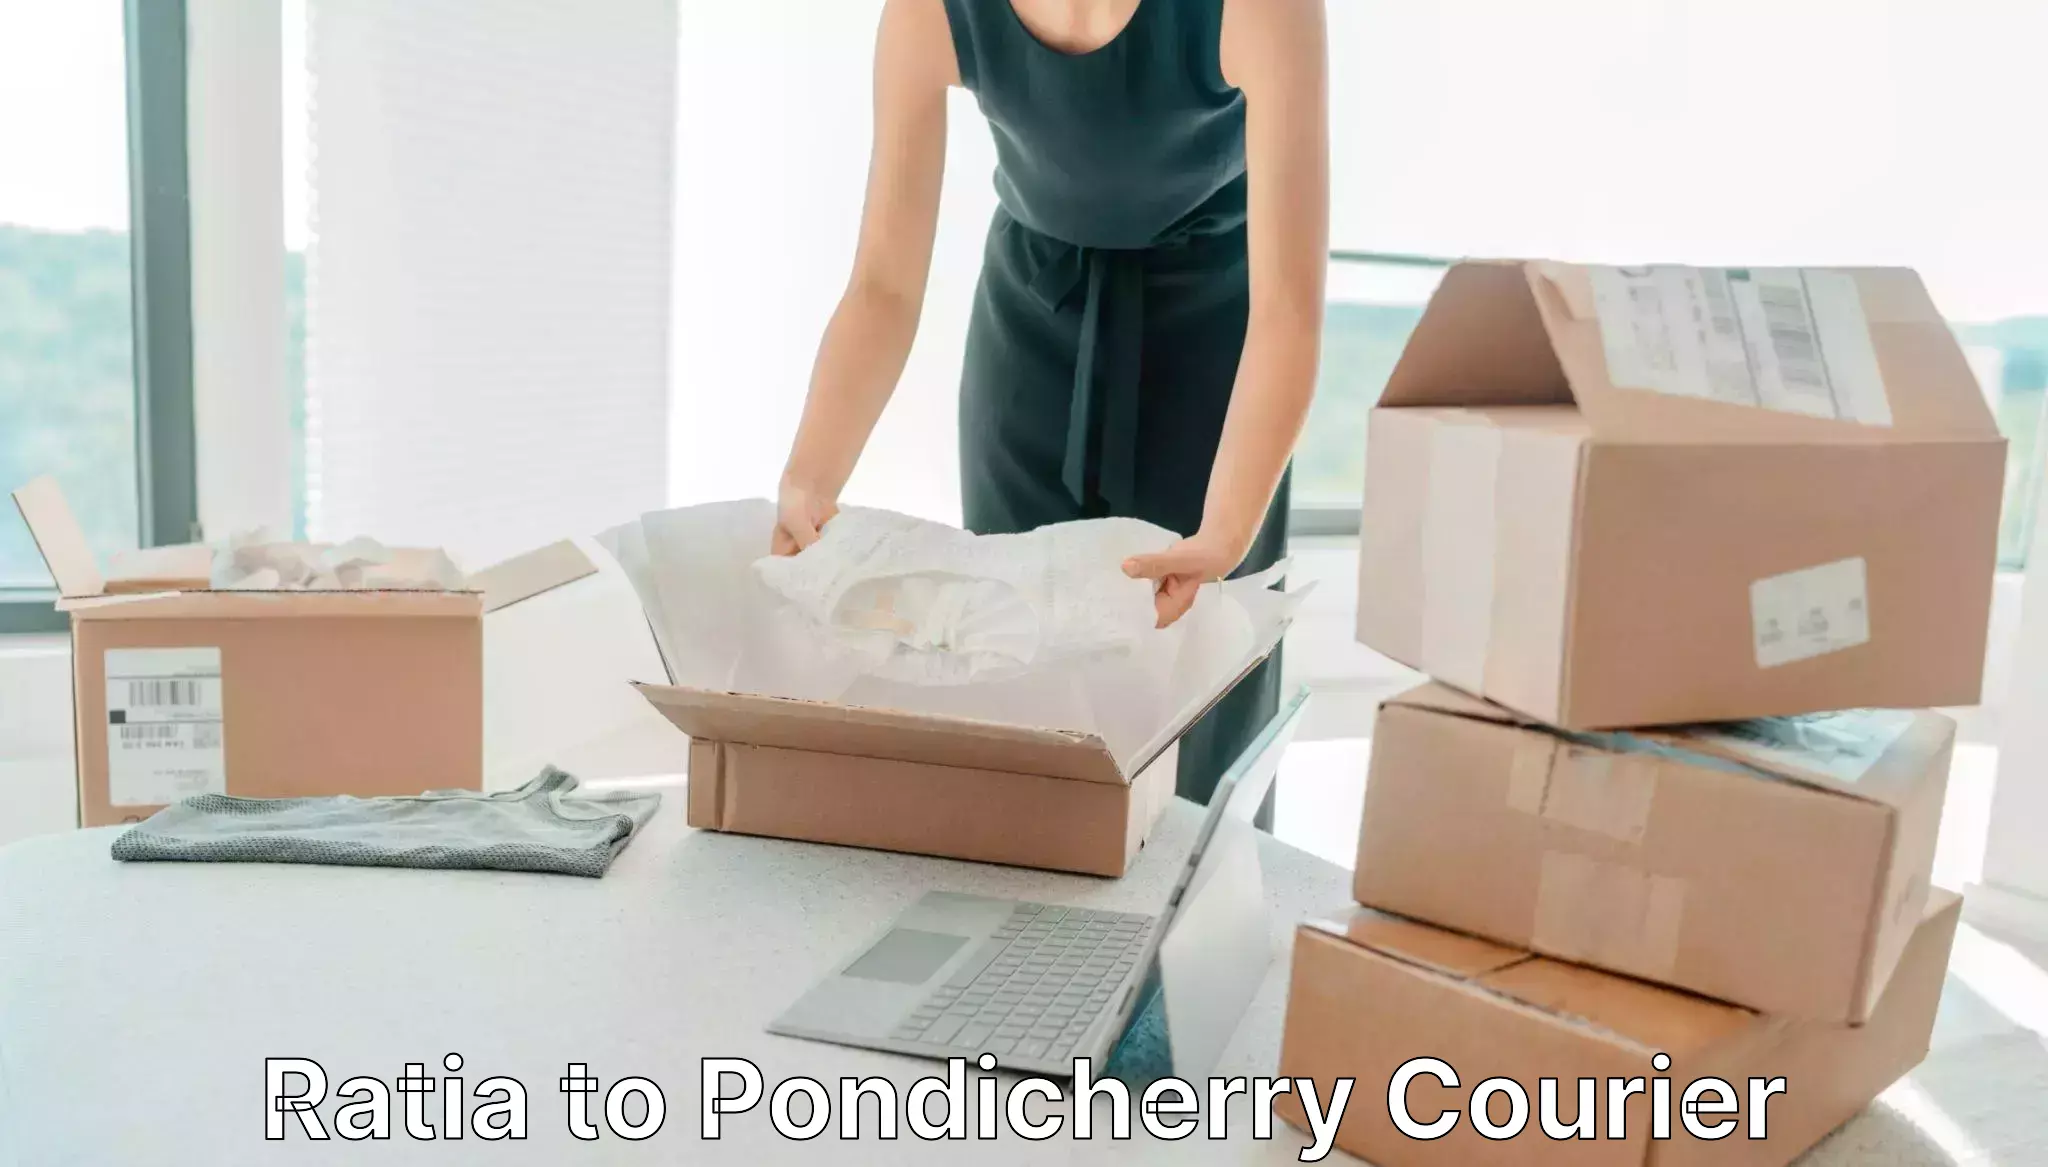 Quick parcel dispatch Ratia to Pondicherry